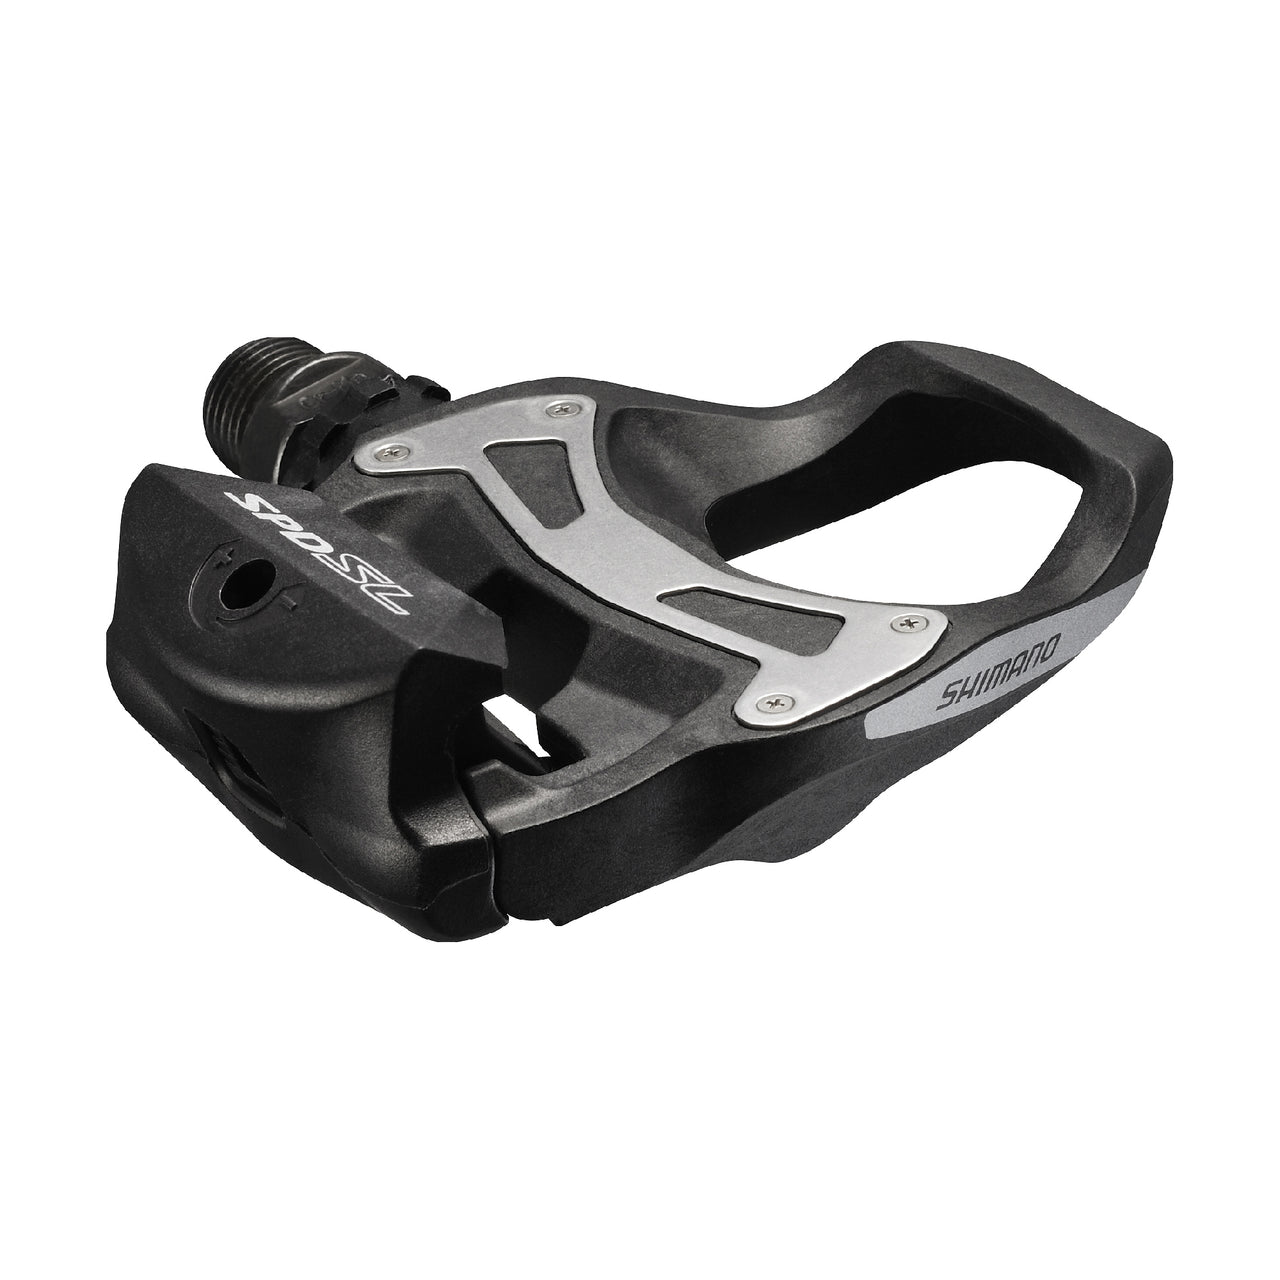 Shimano Tiagra Pedals Black Spd-sl R550